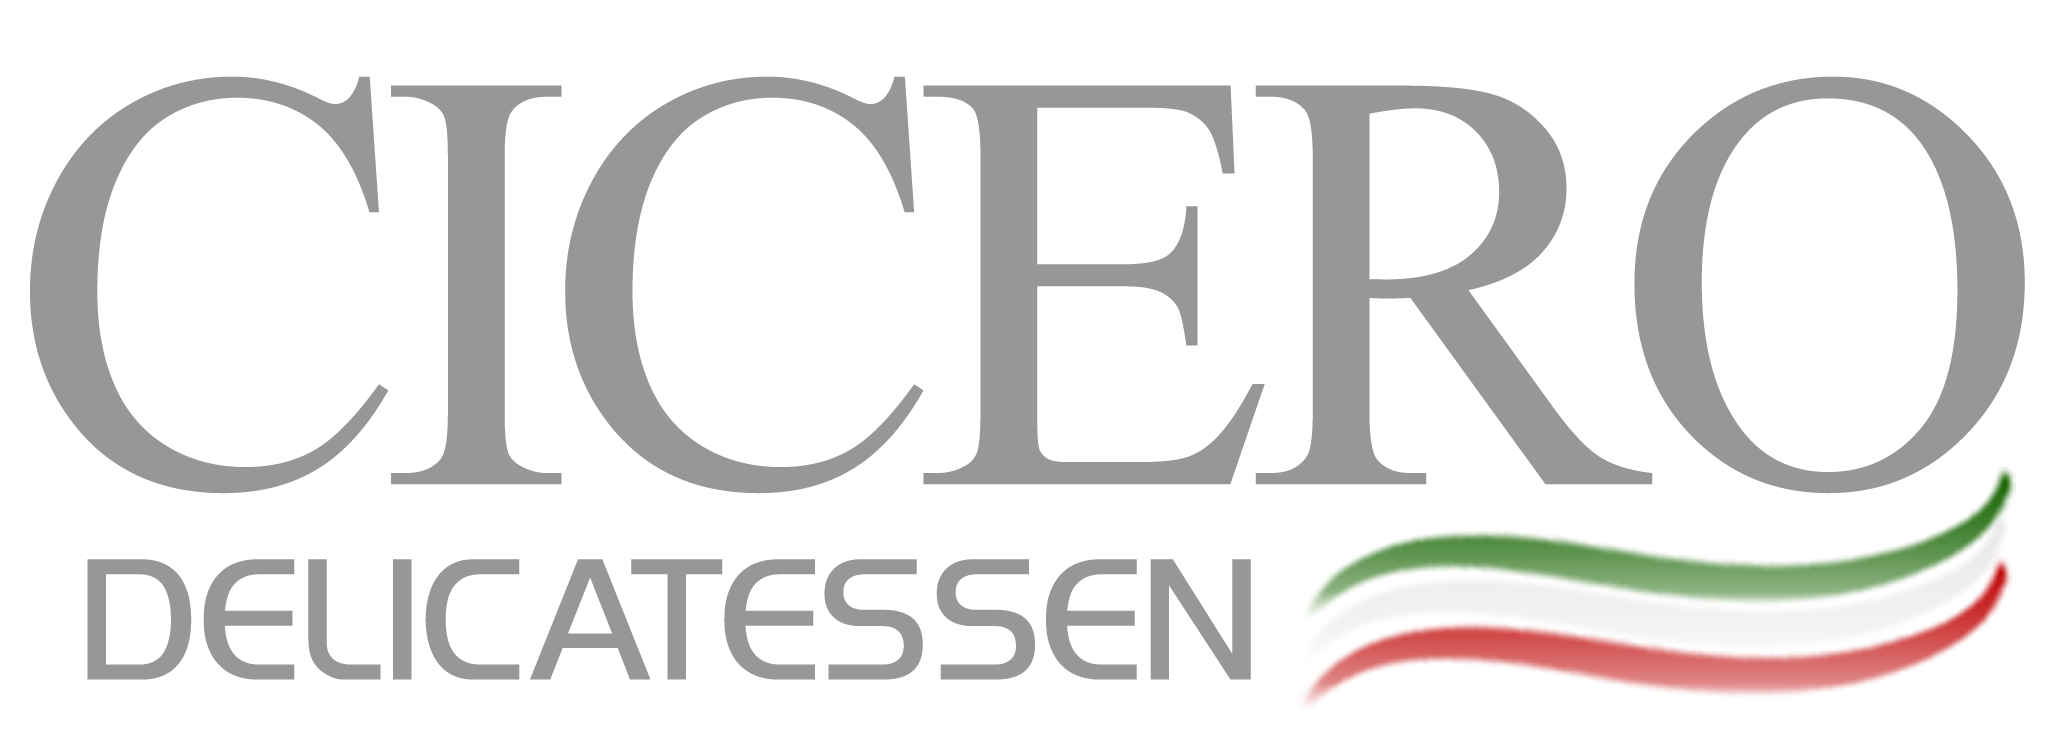 Cicero Delicatessen logo